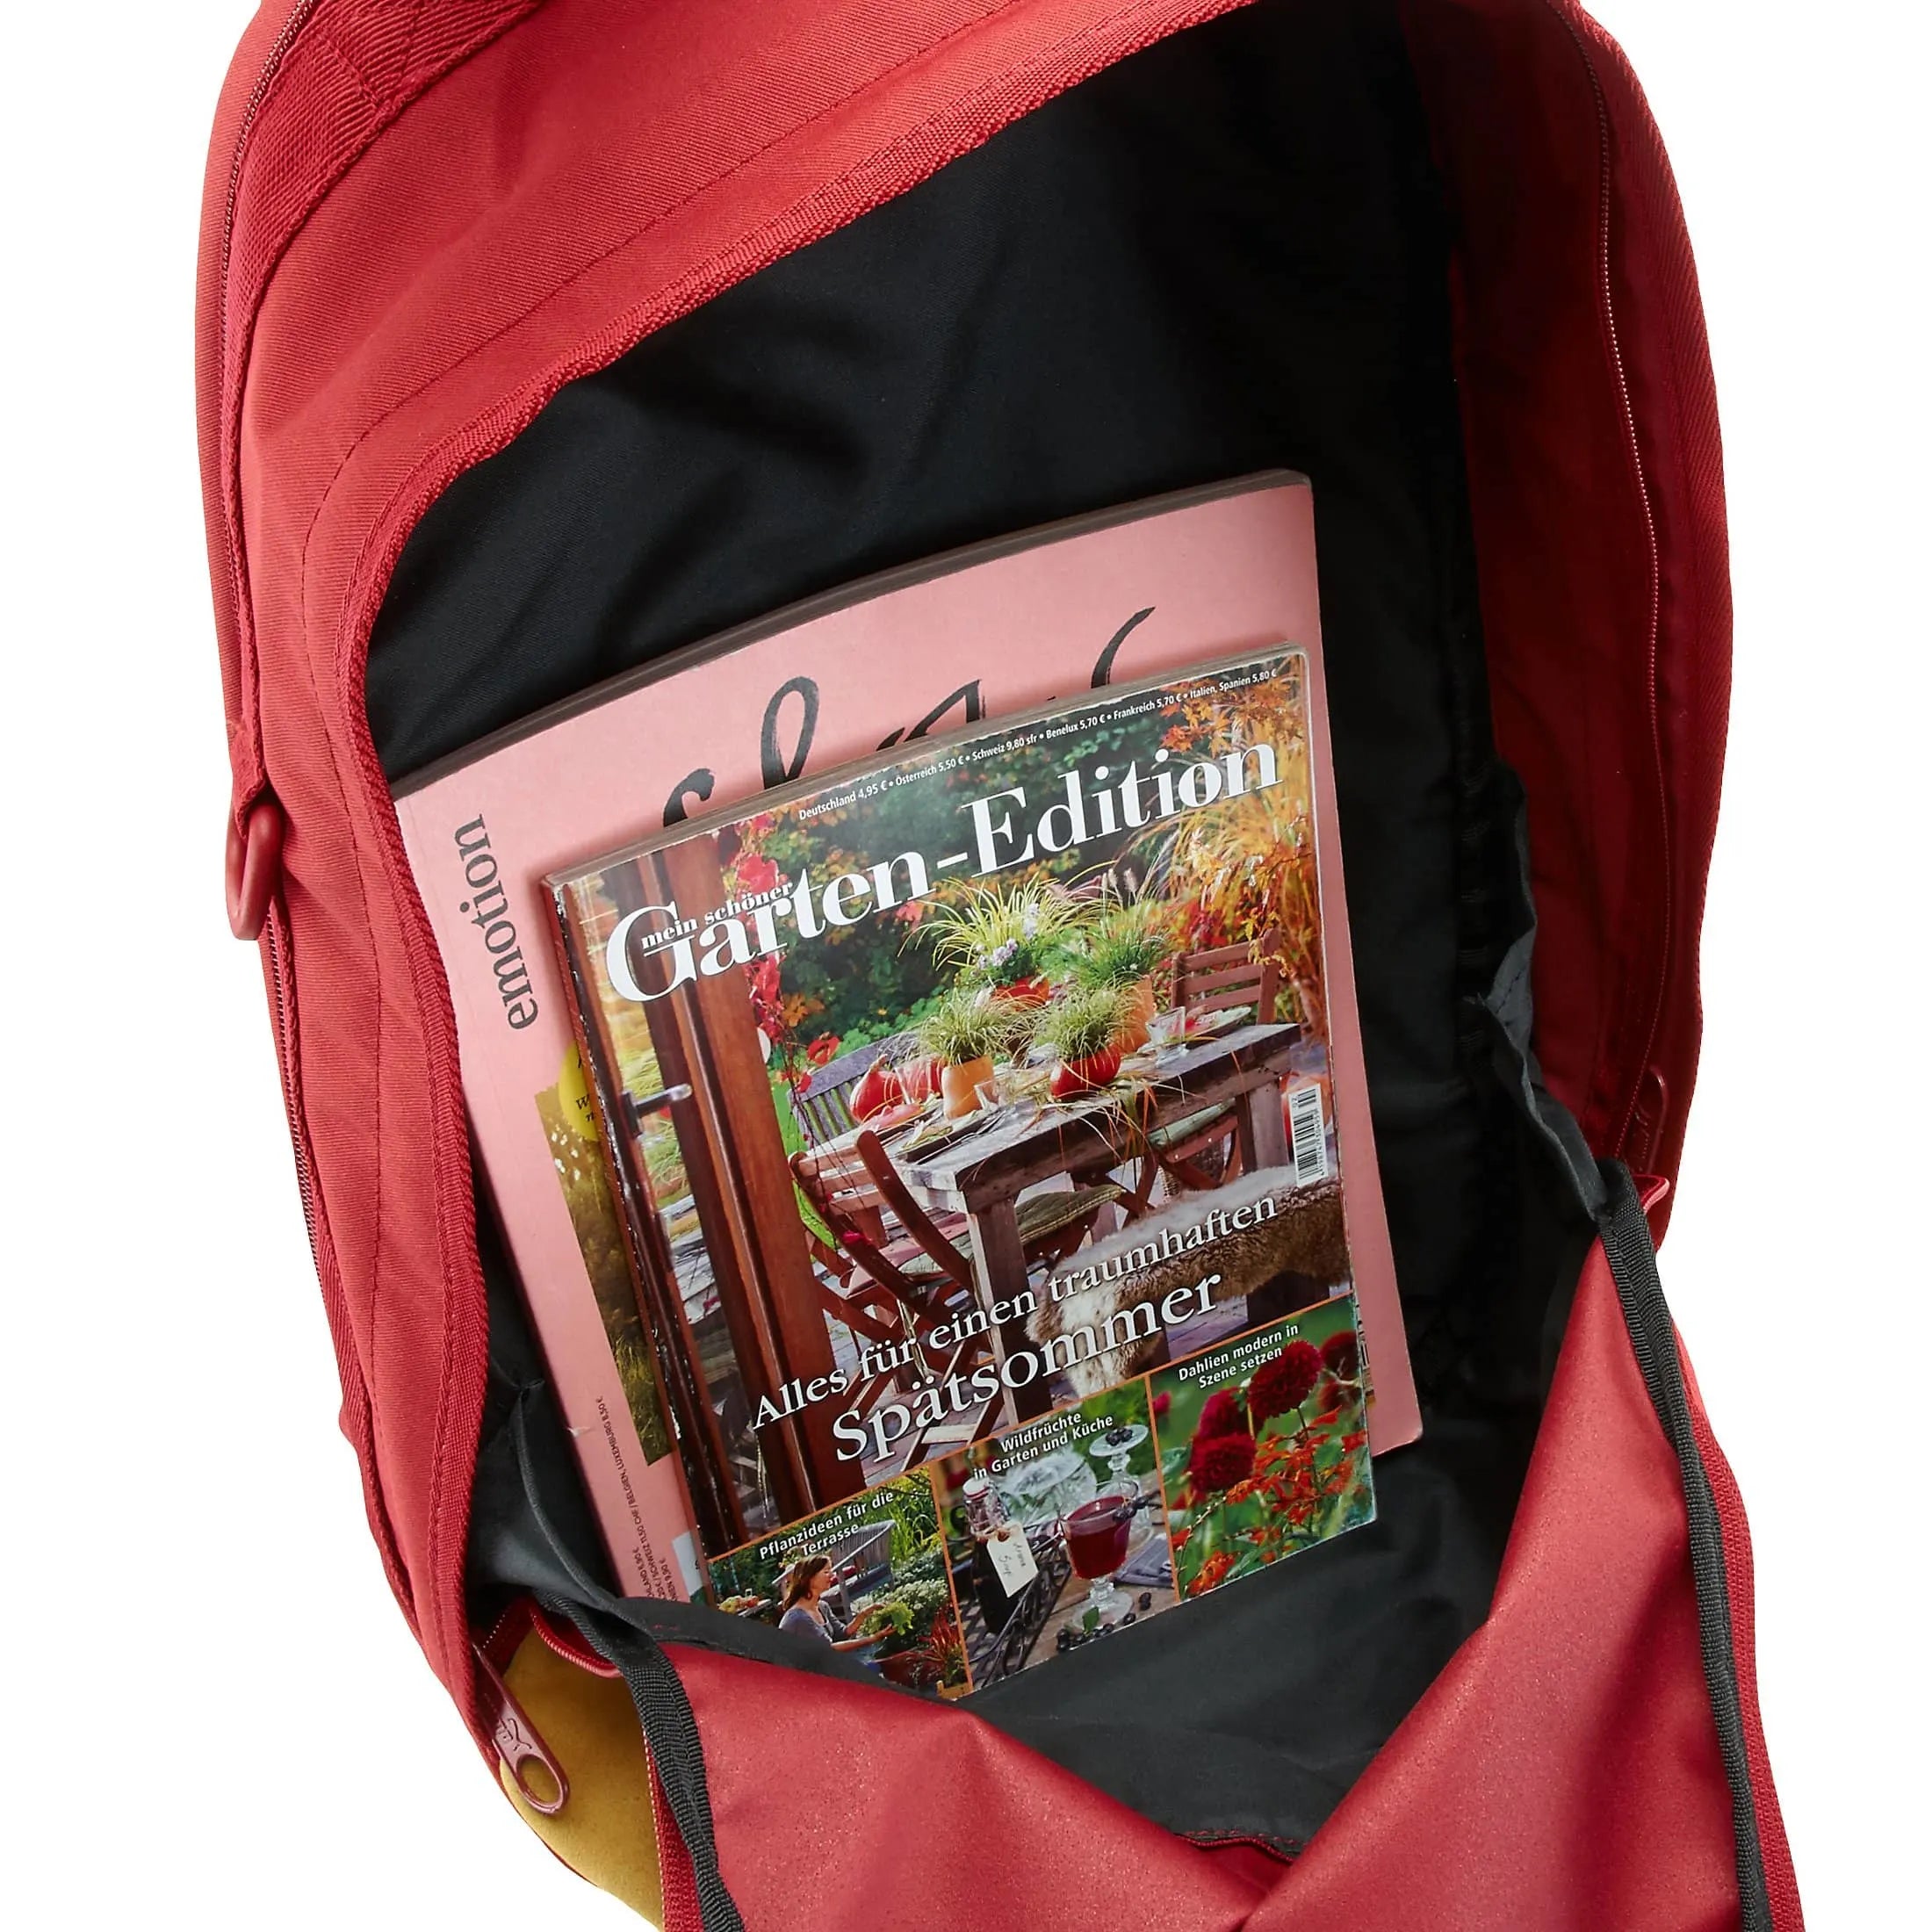 Puma Suede backpack 46 cm - red dahlia